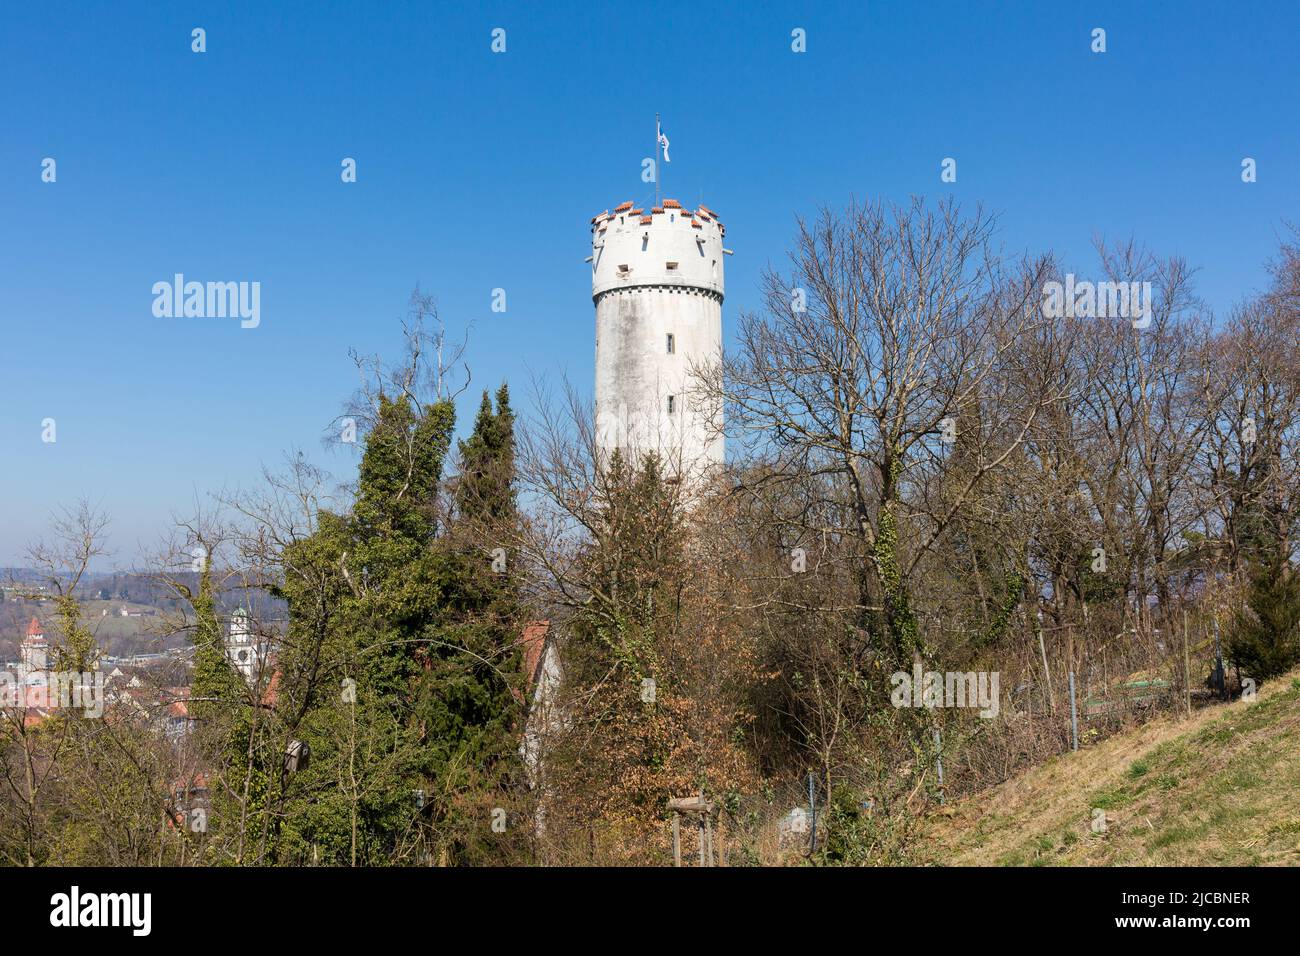 Ravensburg, Deutschland - 23. März 2022: Blick auf den Mehlsack - Wahrzeichen und berühmtesten Turm von Ravensburg. Stockfoto